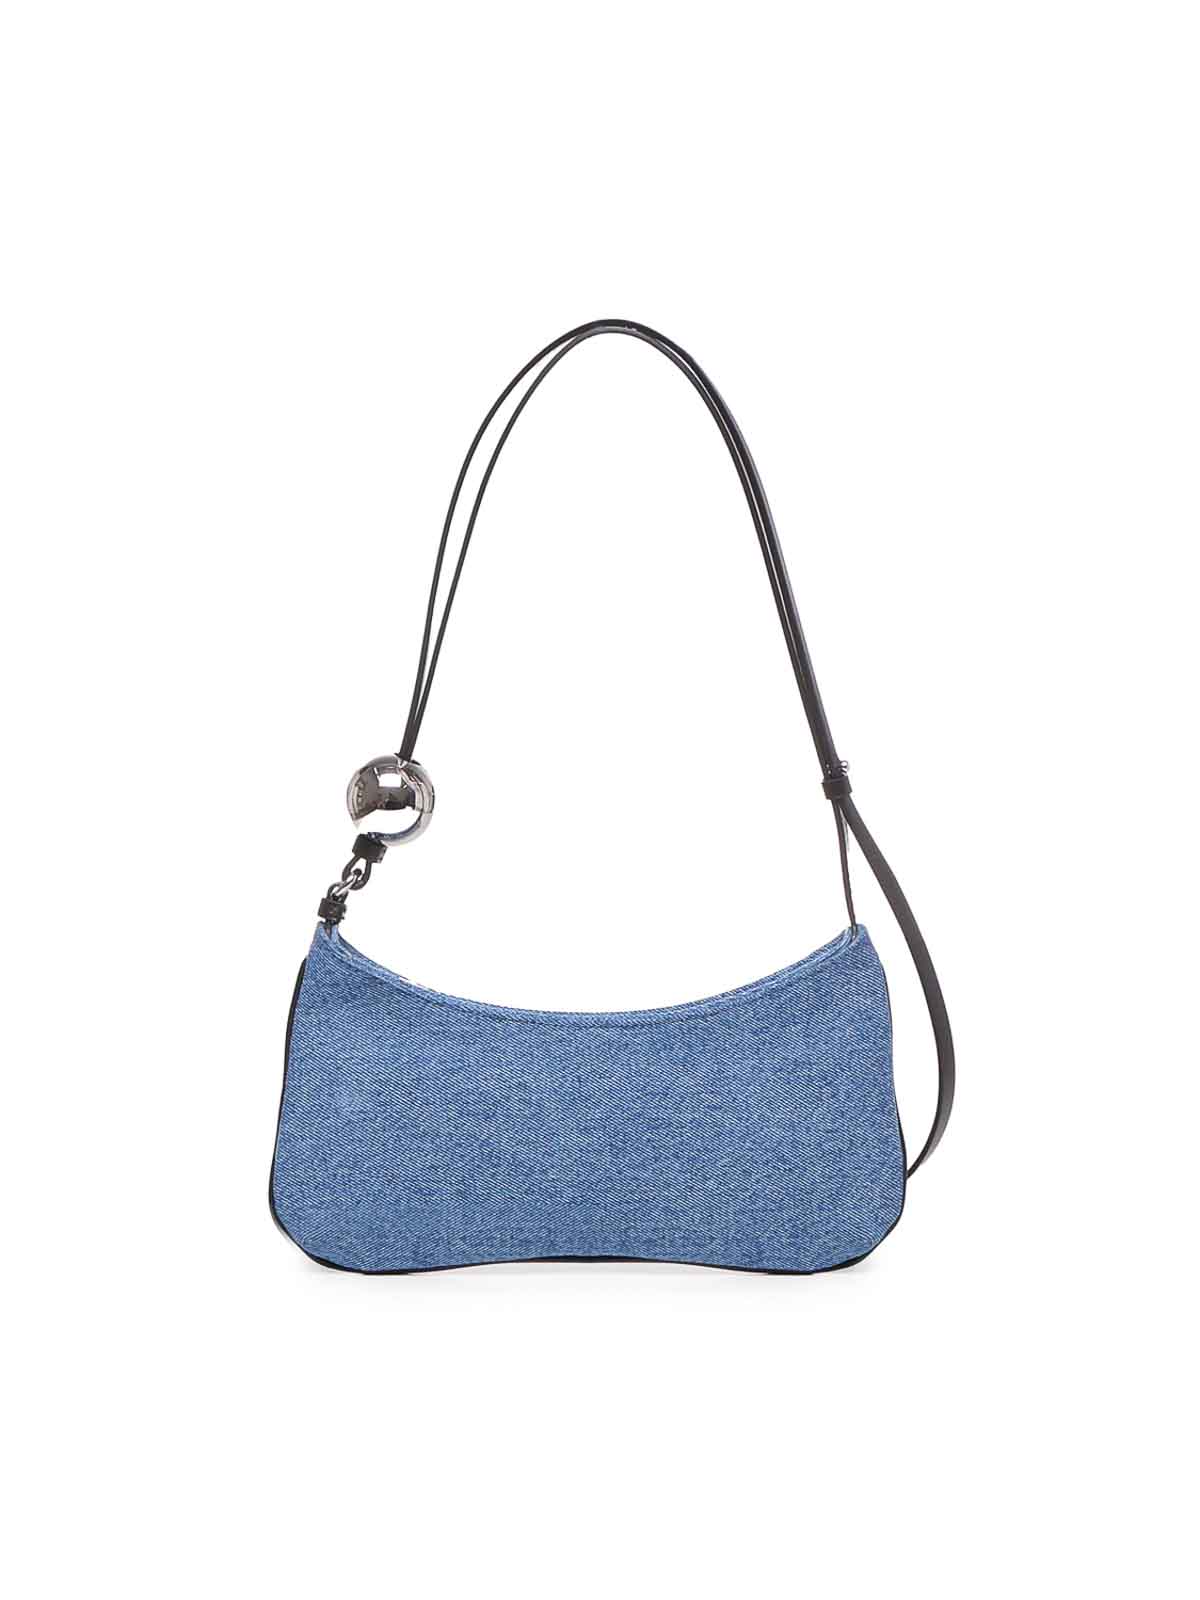 Shop Jacquemus Le Bisou Pearl Bag In Blue